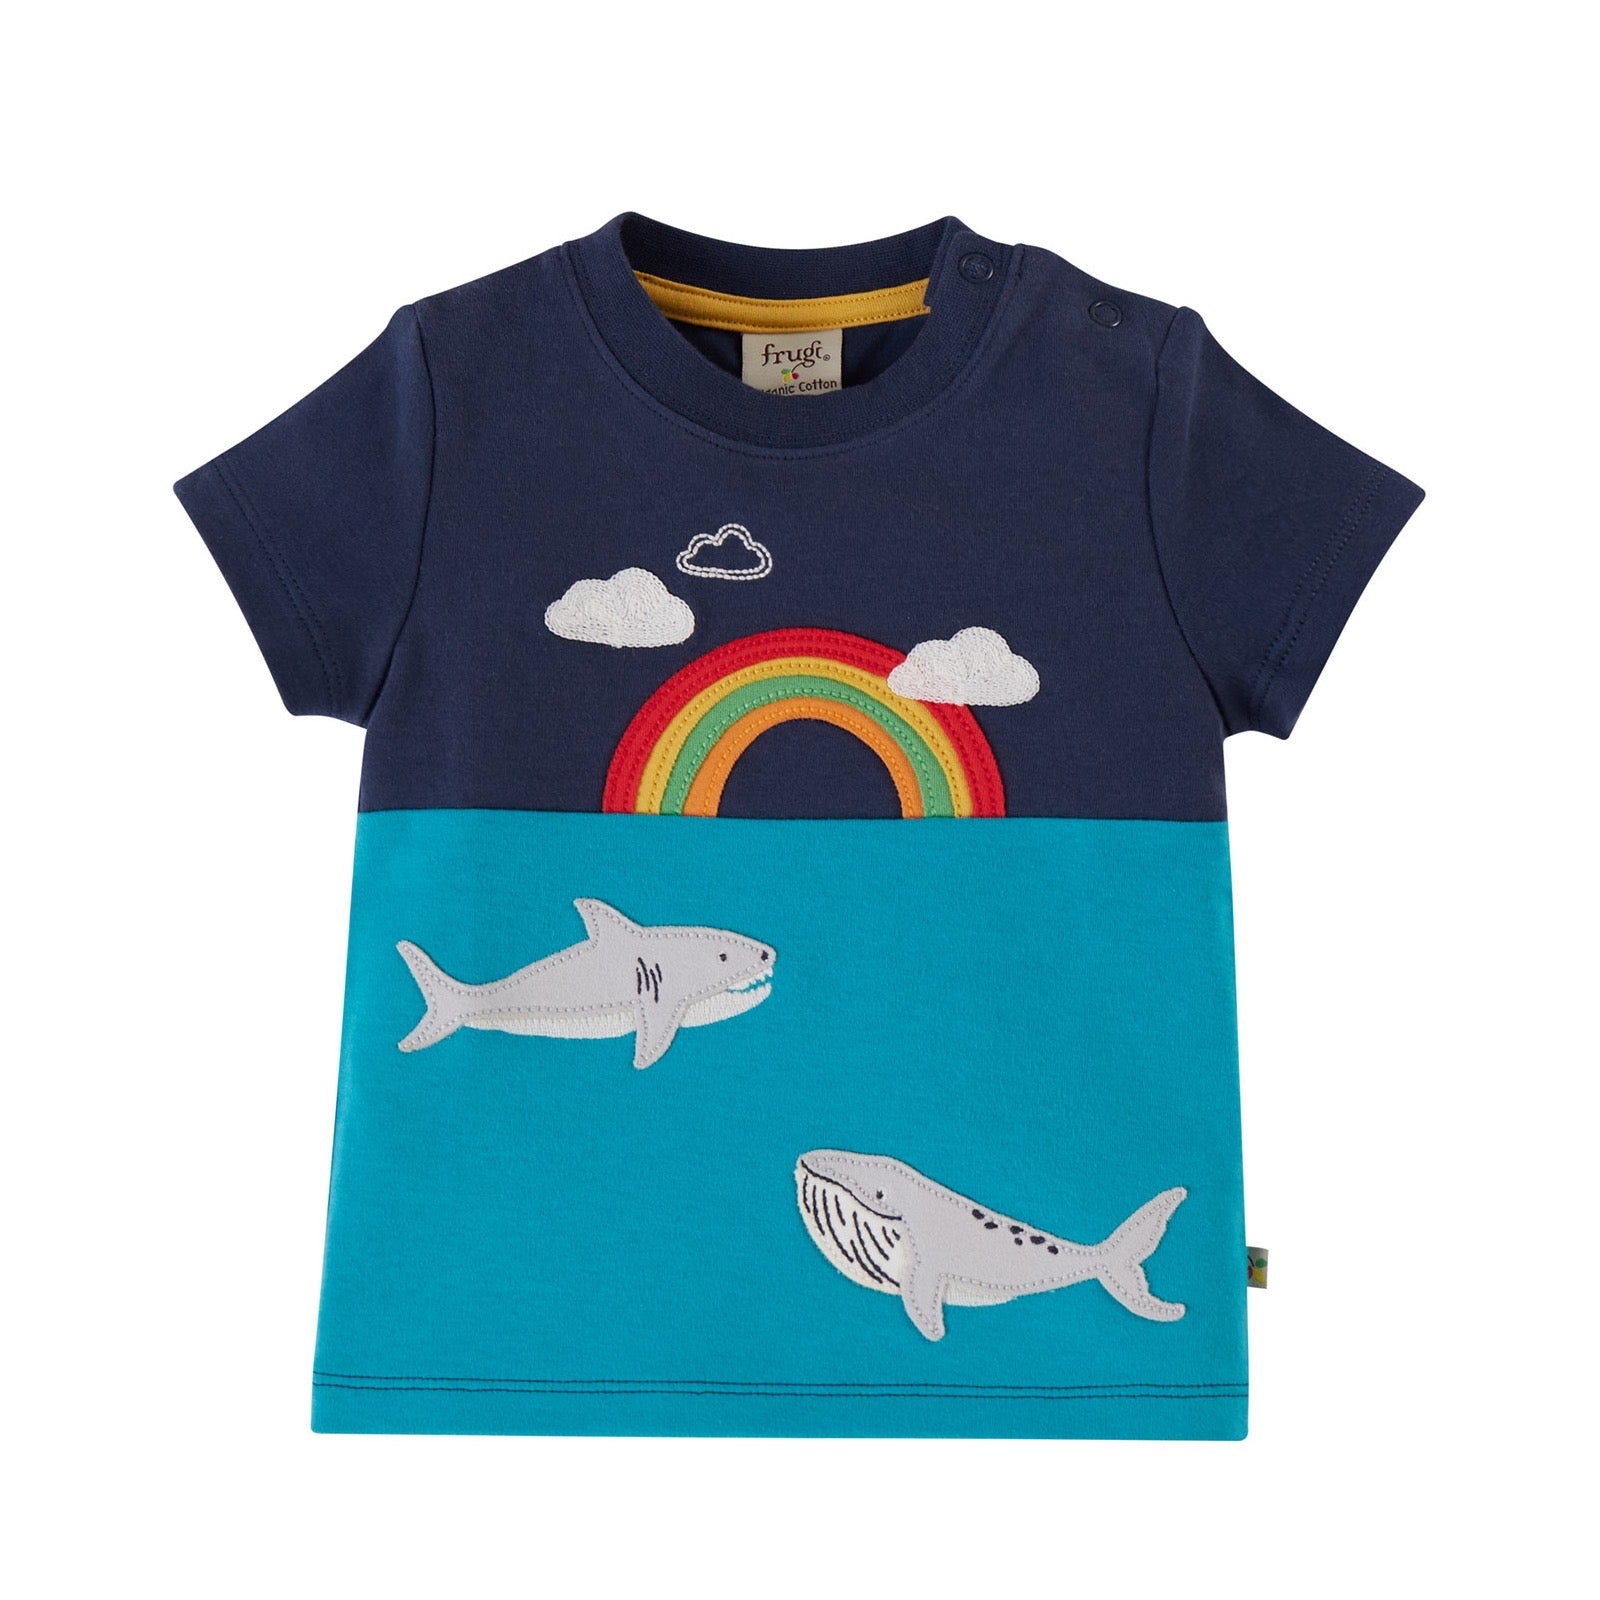 Frugi Penryn Rainbow Whale T-Shirt Tts347rww Clothing 3-6M / Multi,6-12M / Multi,12-18M / Multi,18-24M / Multi,2-3YRS / Multi,3-4YRS / Multi,4-5YRS / Multi